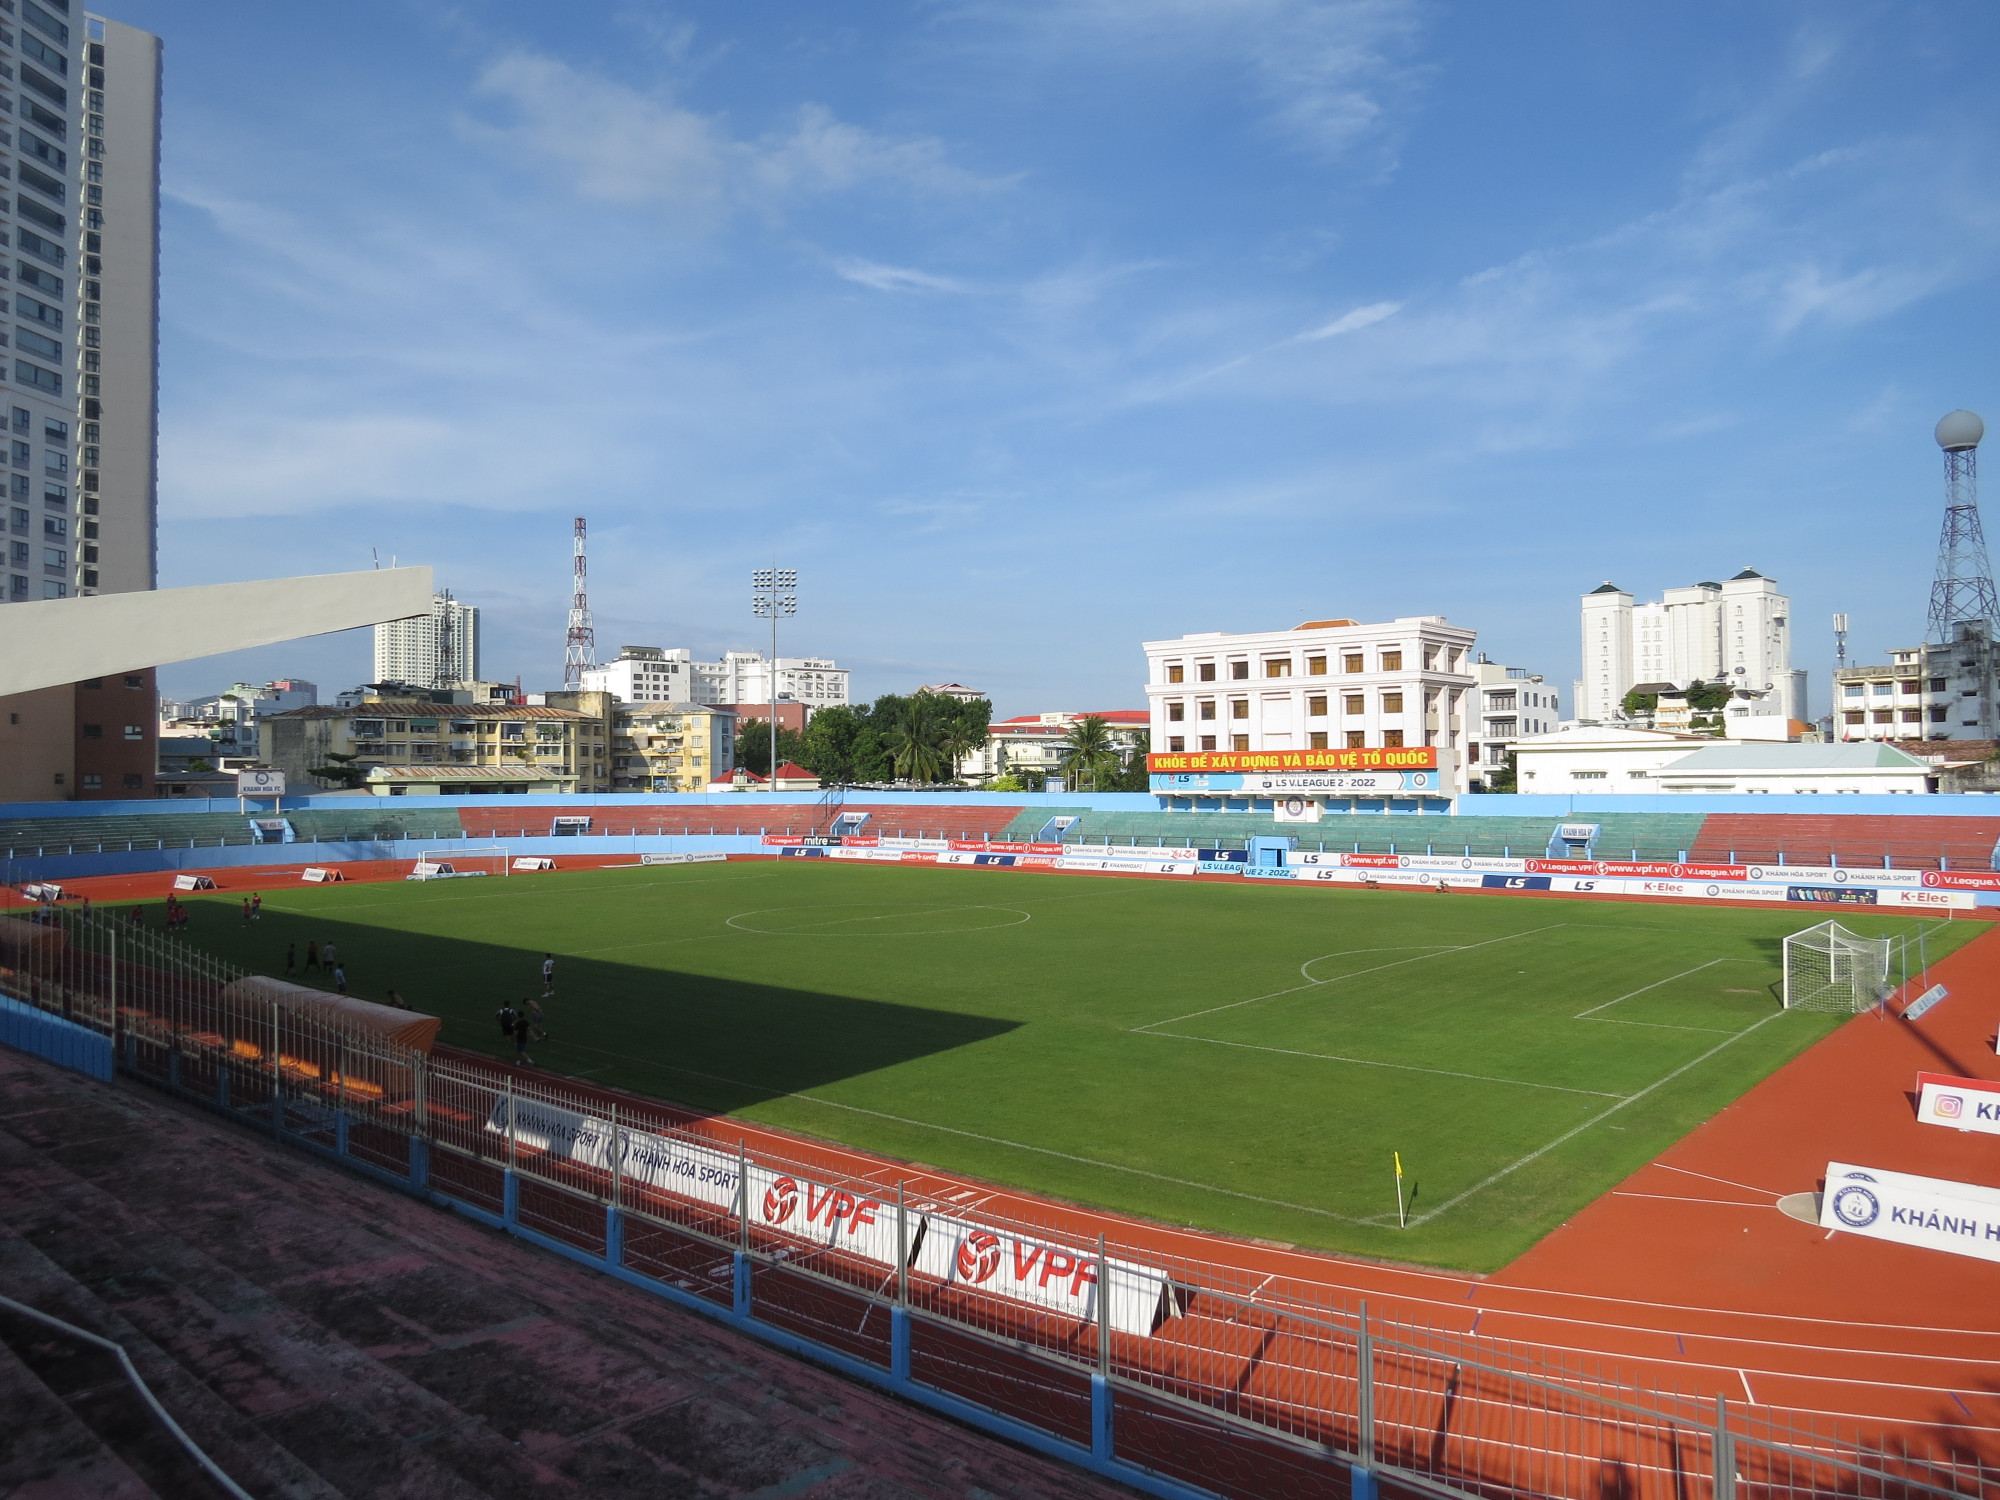 Sân vận động 19/8 Nha Trang là nơi tổ chức nhiều giải thi đấu thể thao trong và ngoài tỉnh